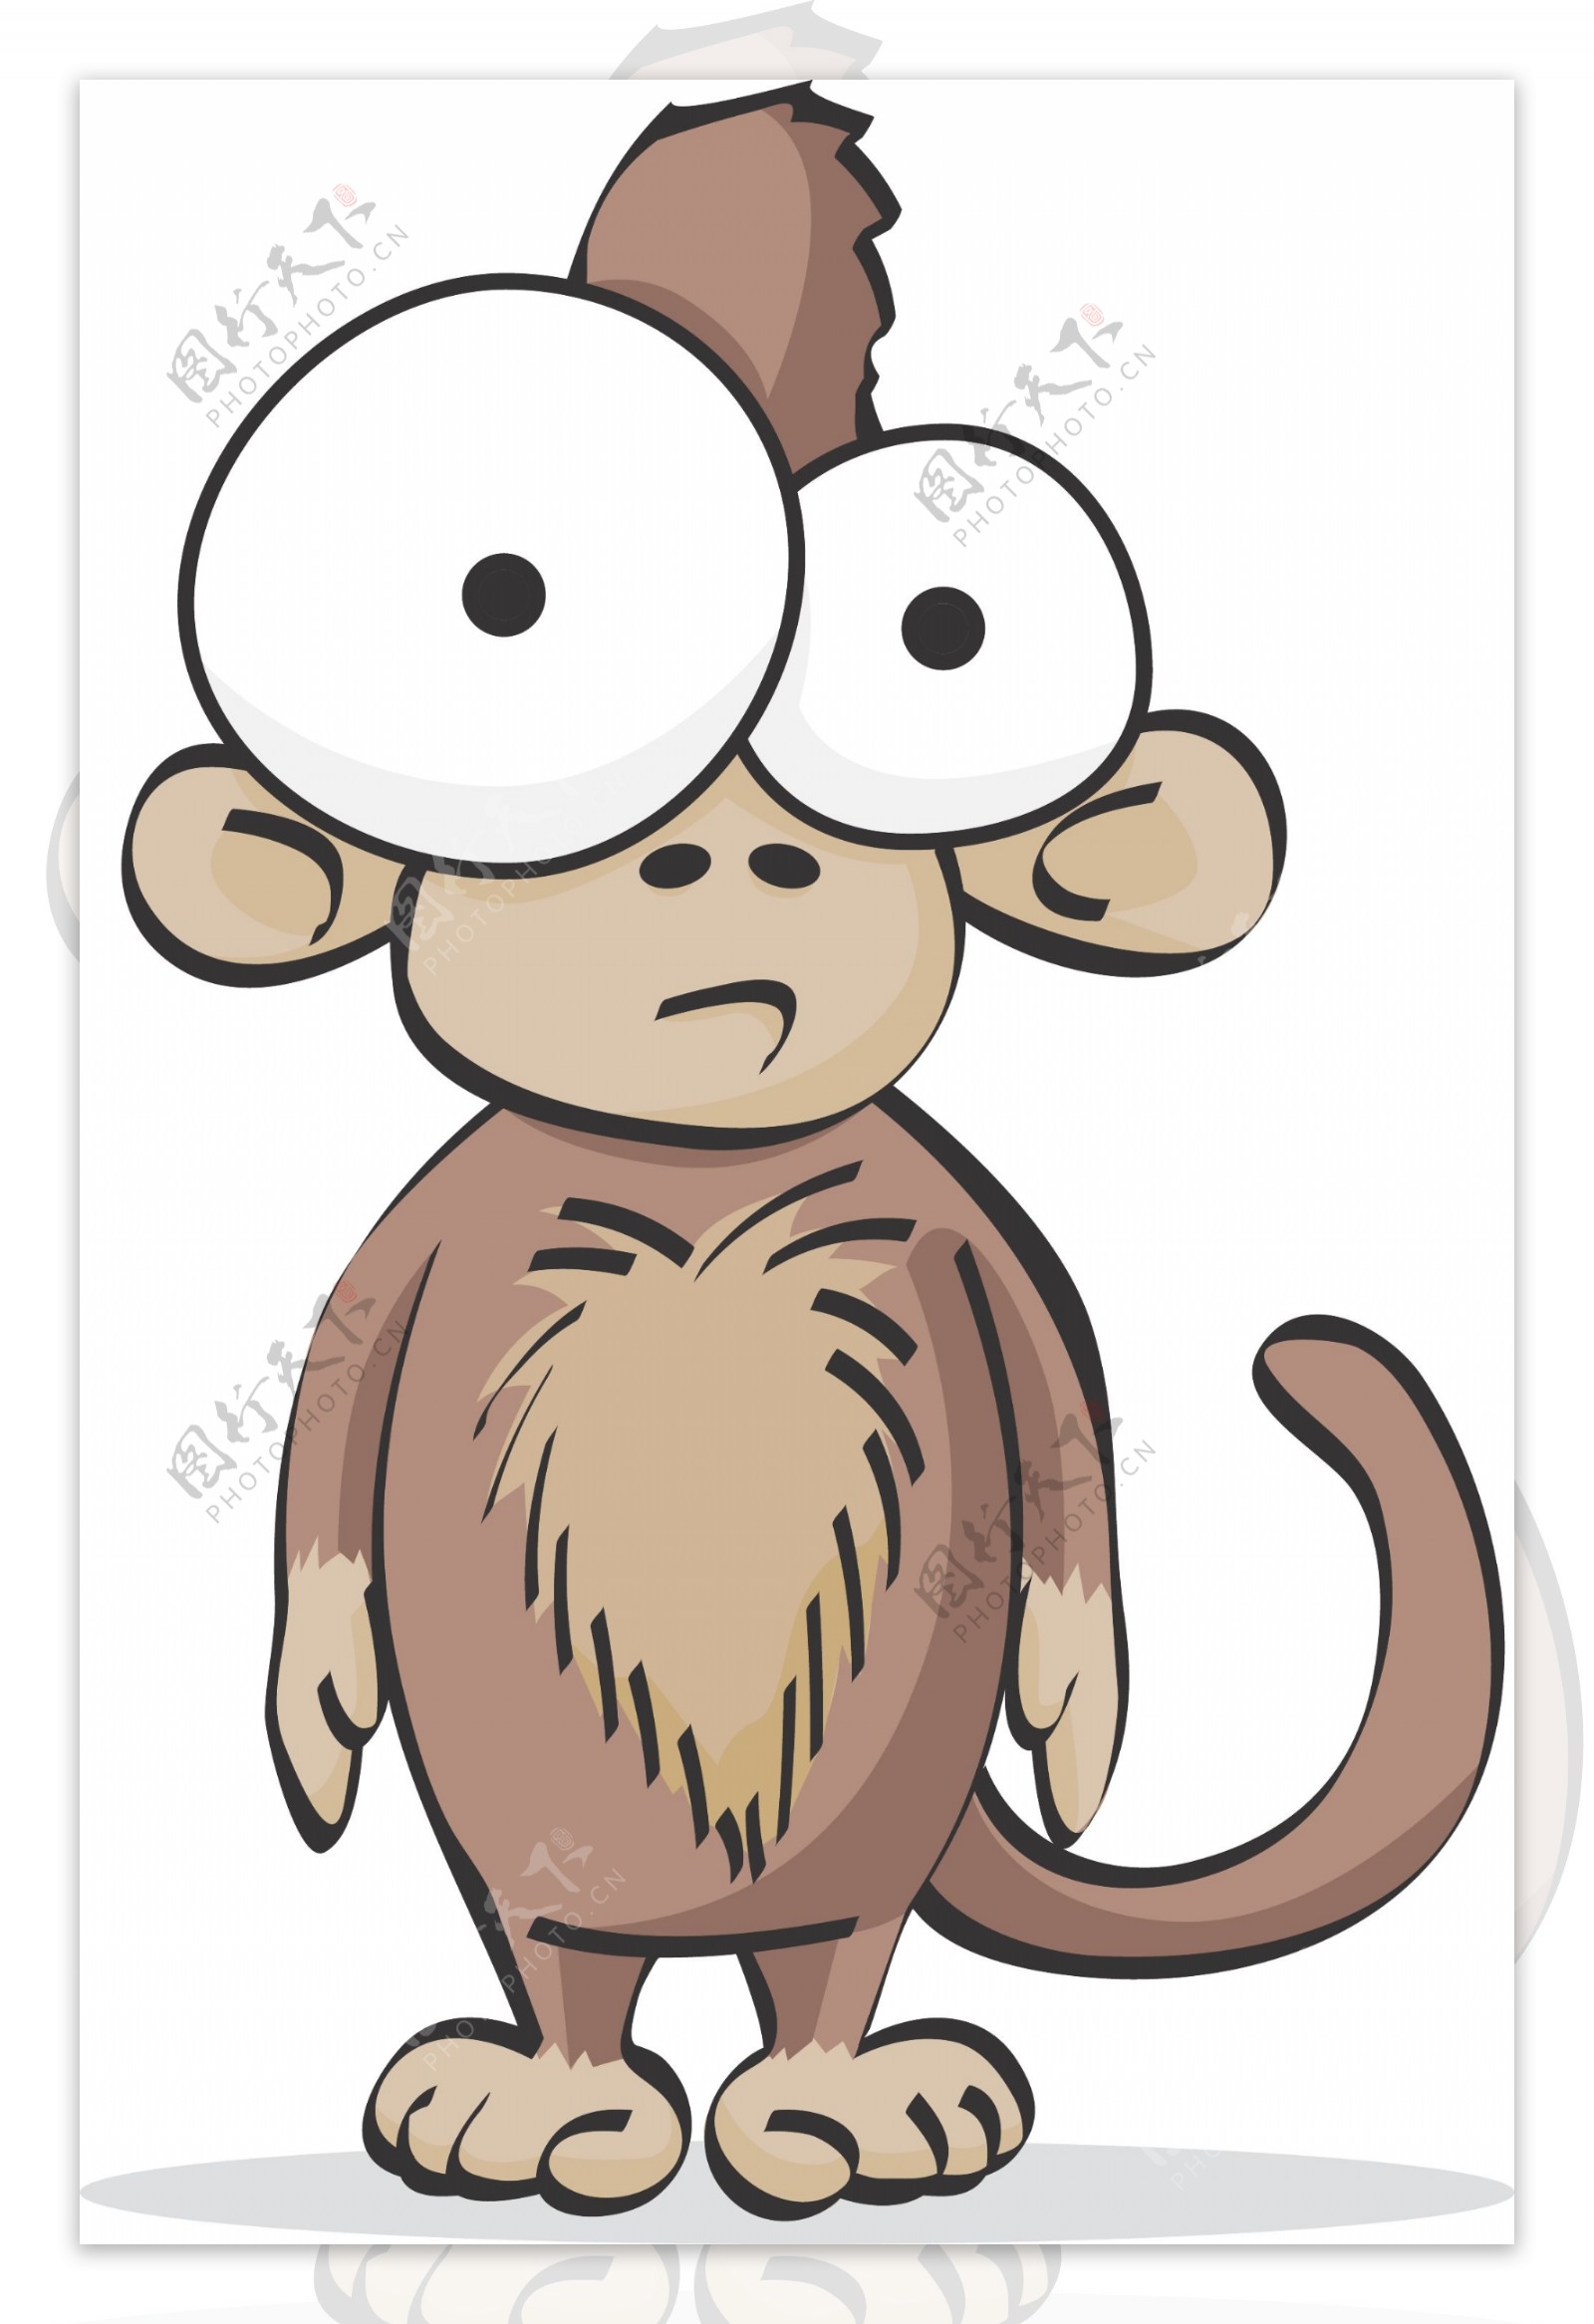 猴子搞笑搞怪动物卡通大眼睛